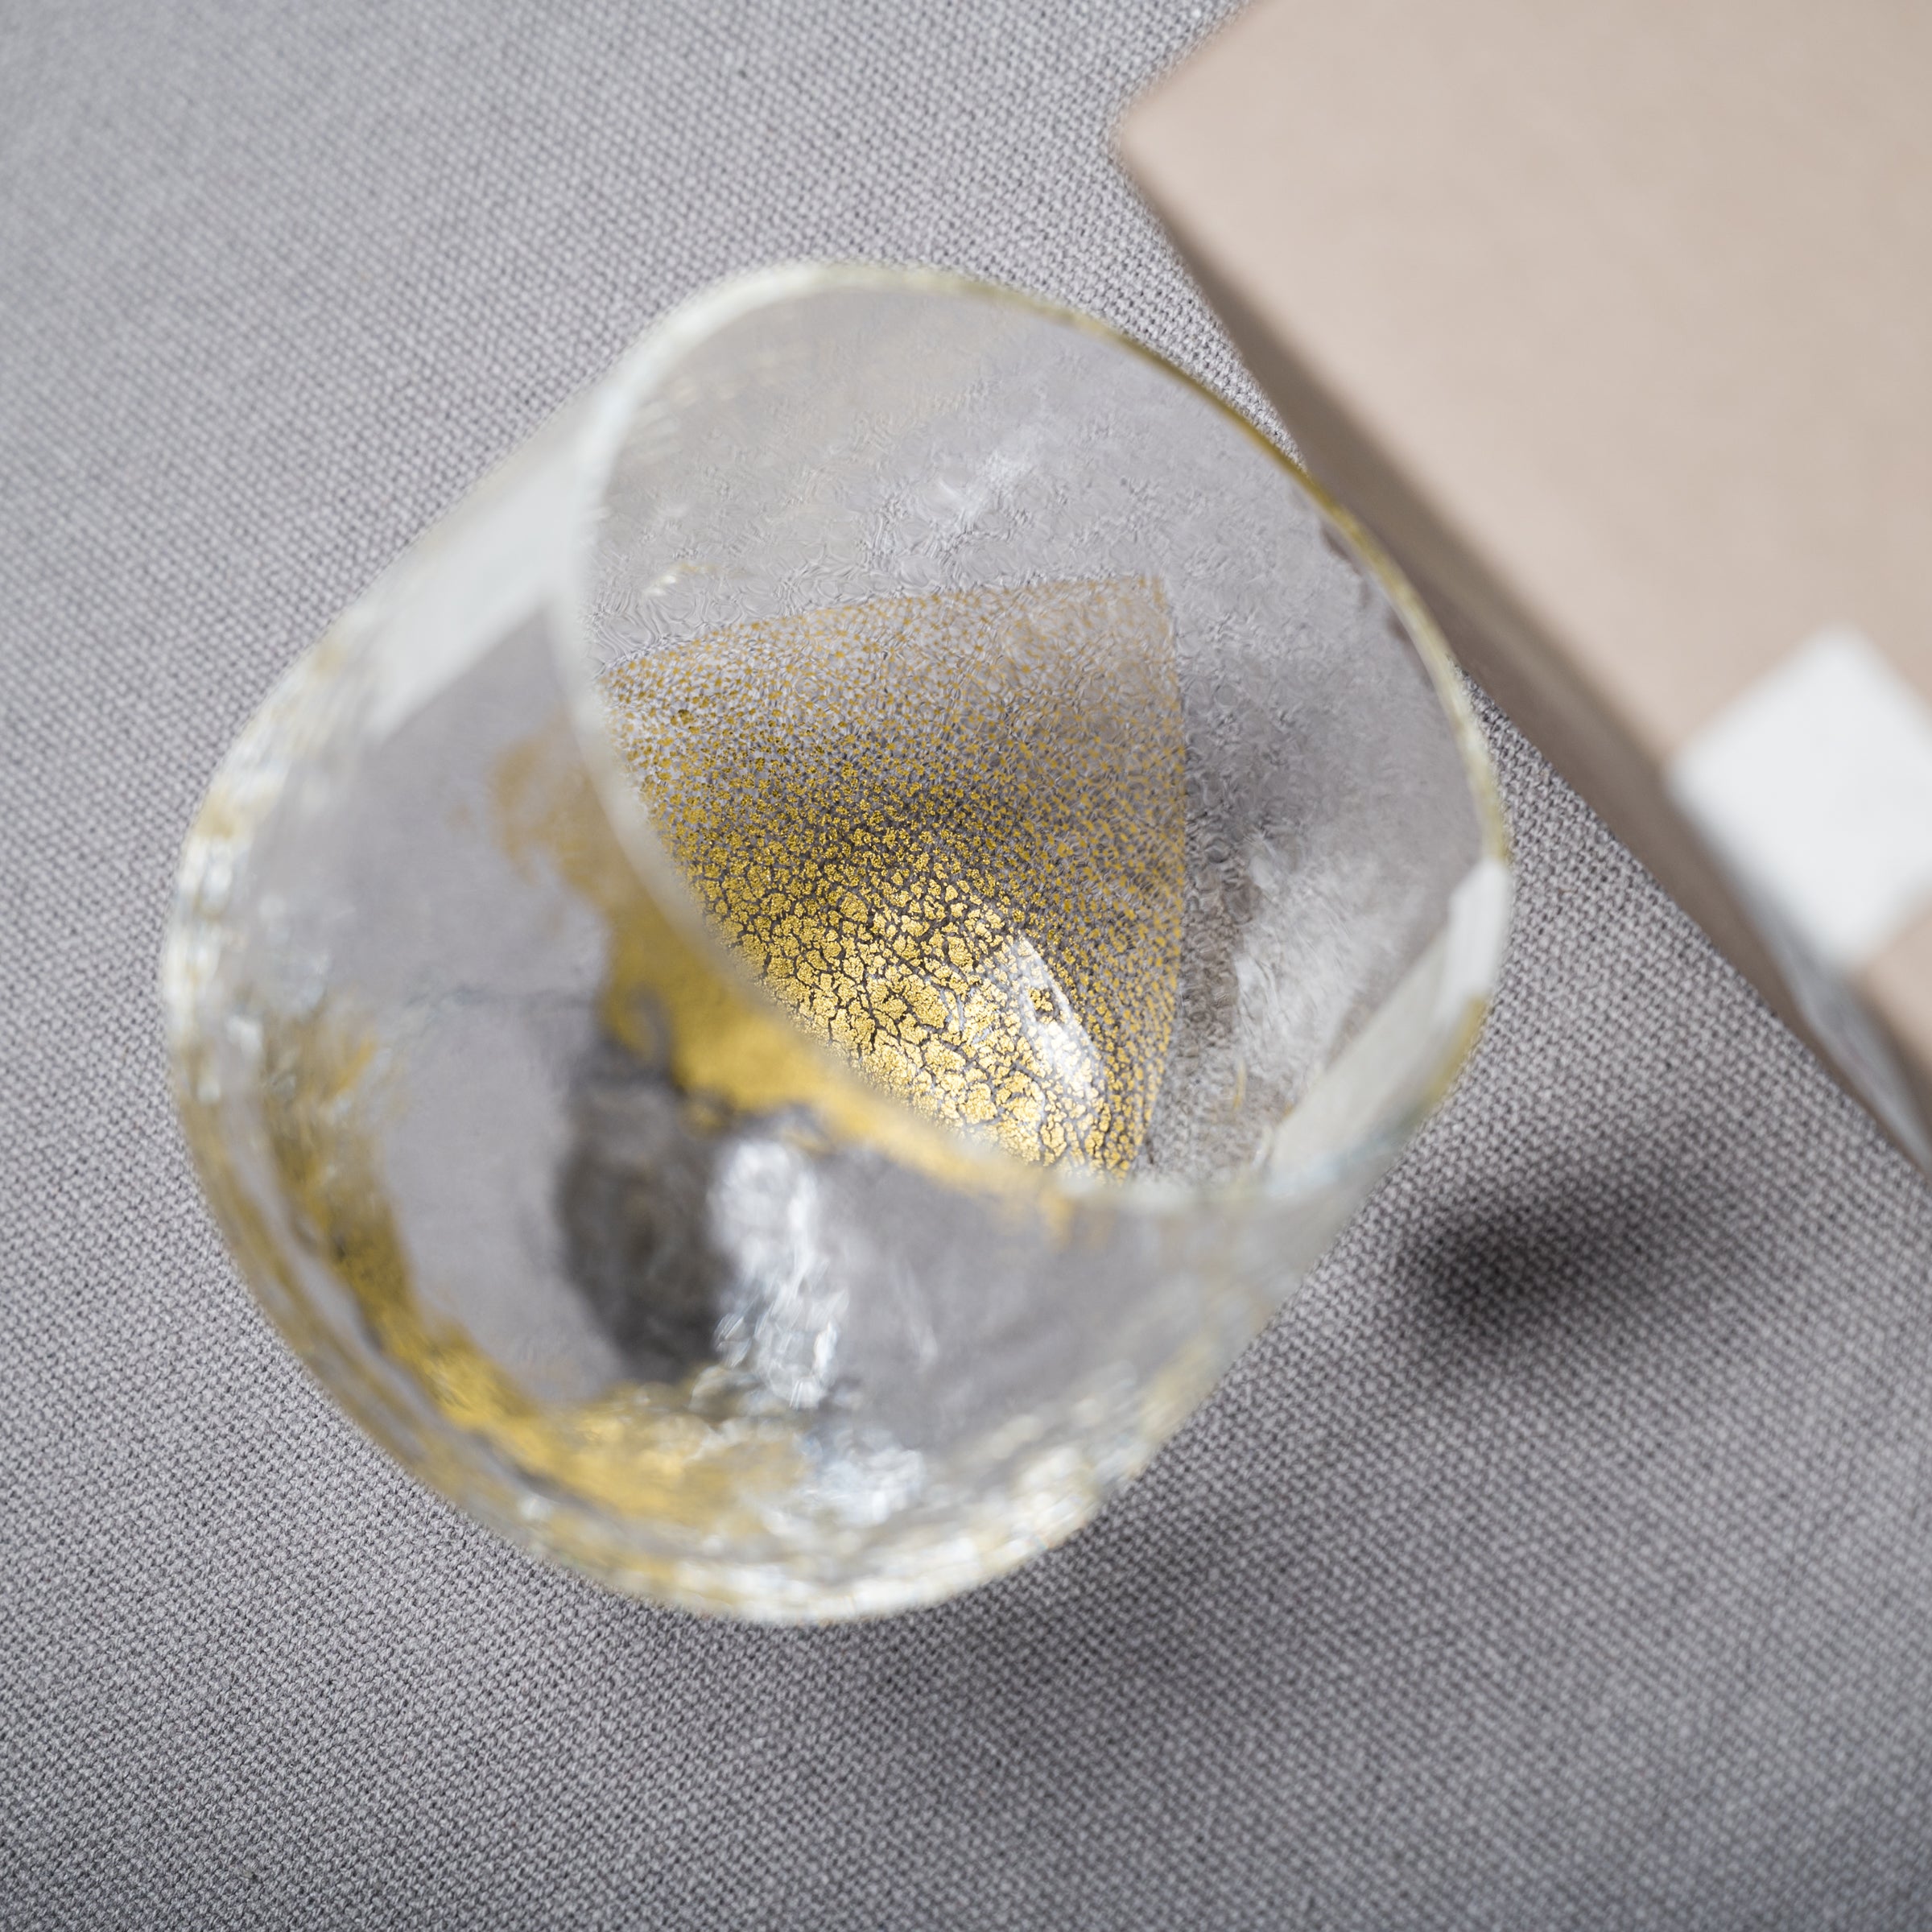 Yachiyo Edo Glass Tumbler - Gold Leaf / 江戸硝子 八千代 金箔